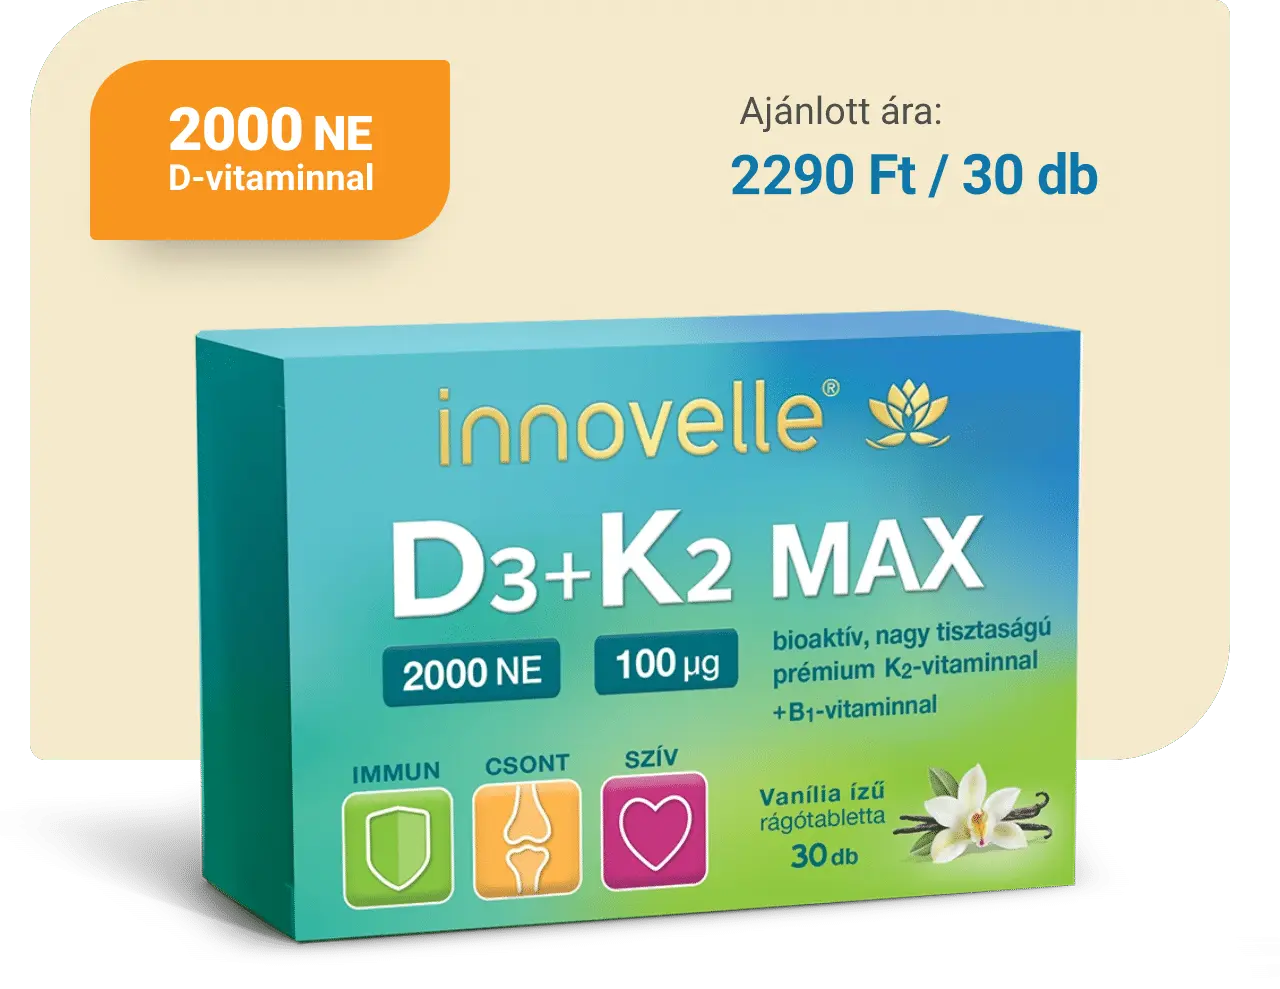 D3 vitamin K2 vitaminnal